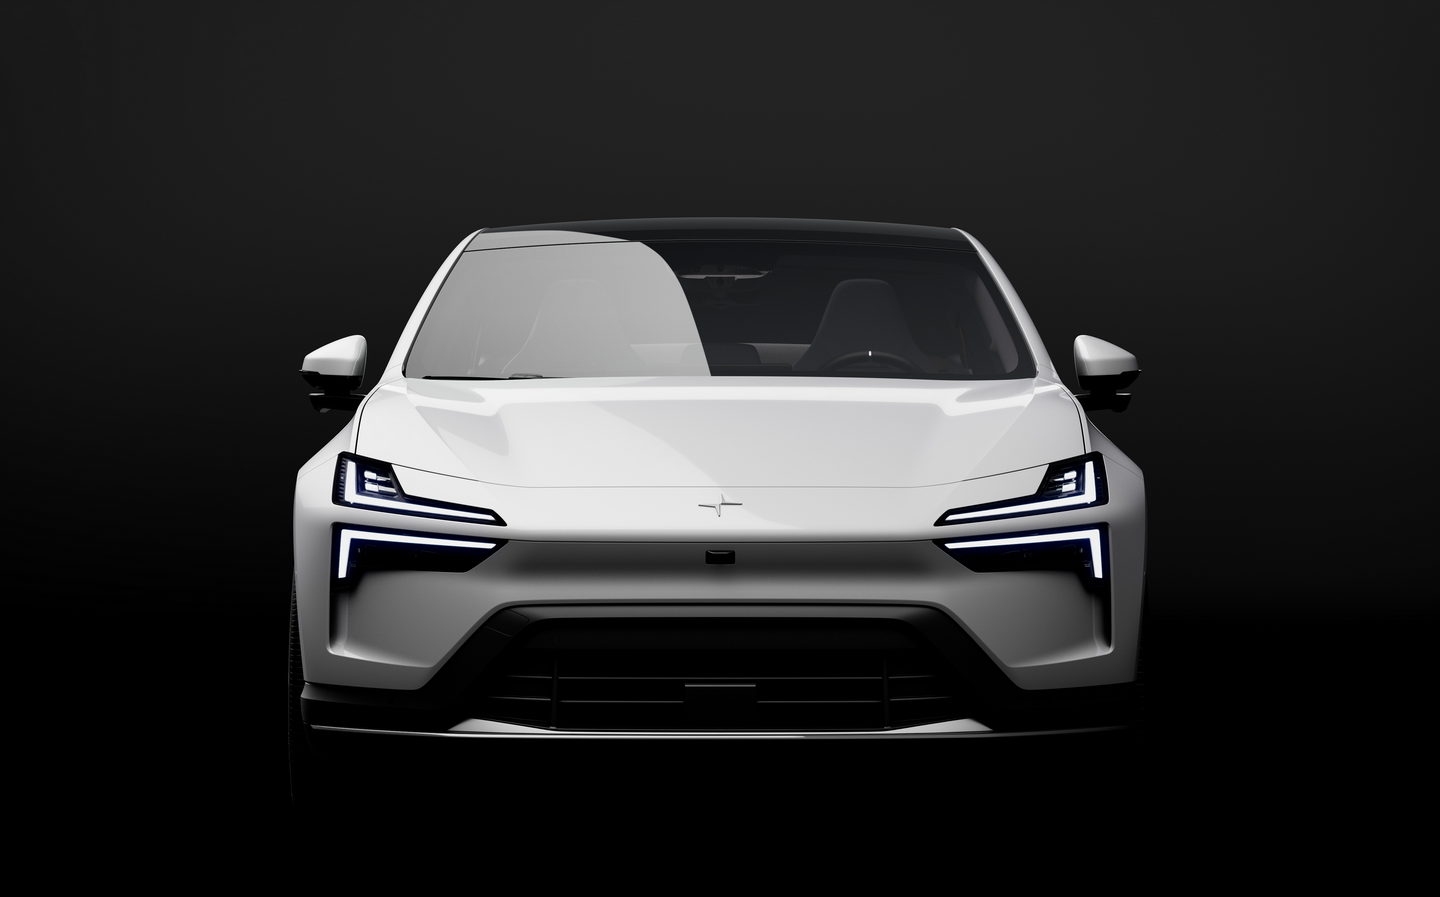 auto shanghai, electric car, polestar, polestar 4, polestar 4 suv coupé revealed as company’s fastest production car yet